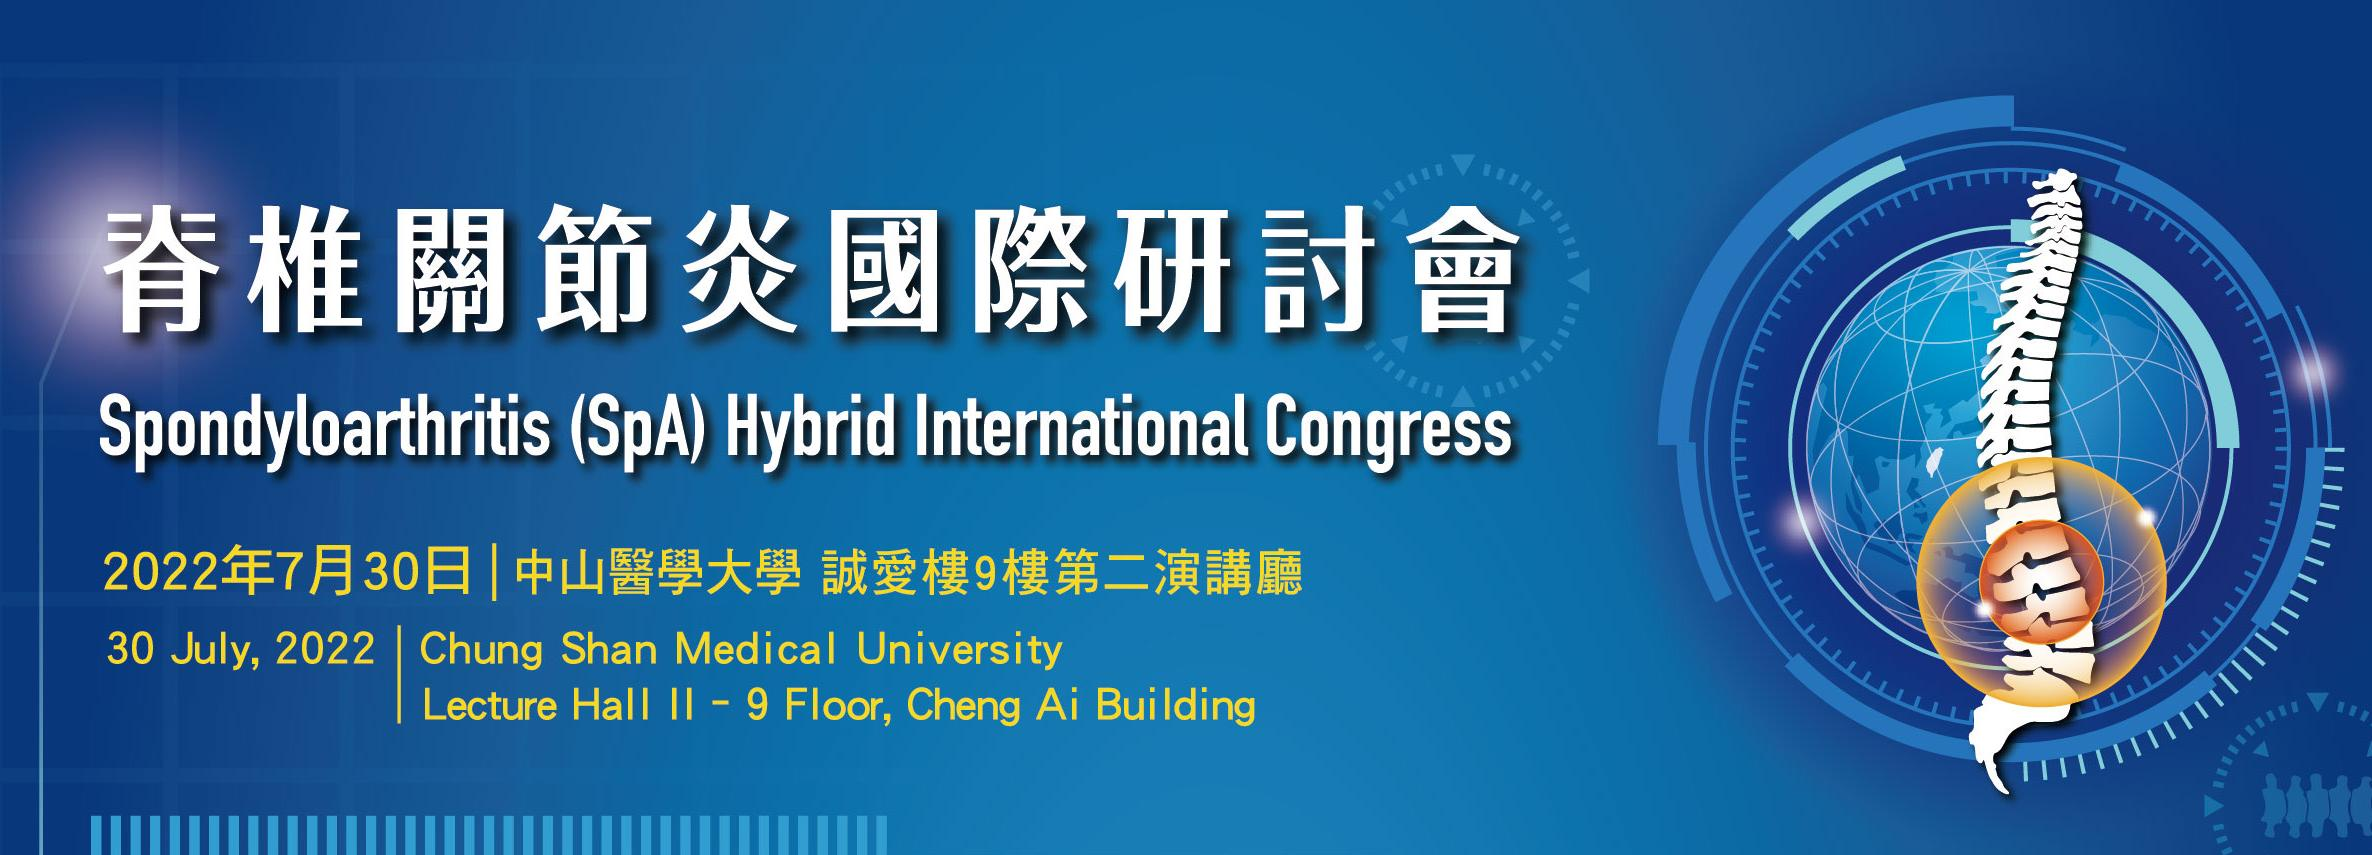 脊柱关节炎国际研讨会于2022年7月30日于中山医学大学举行